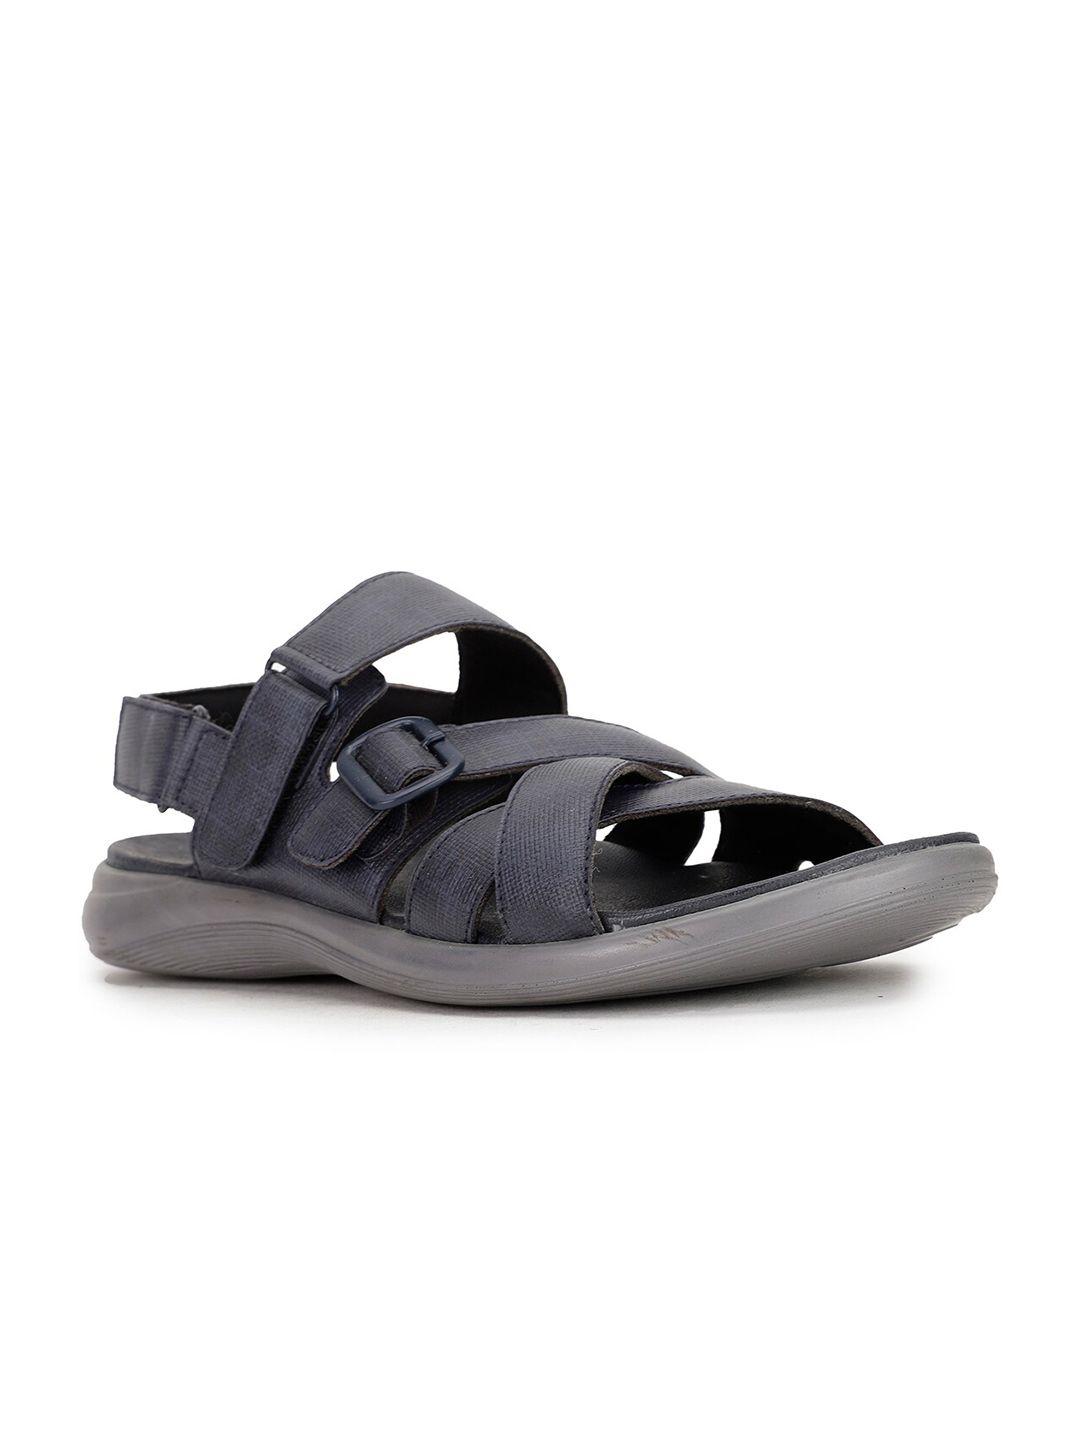 Bata Men Blue PU Comfort Sandals